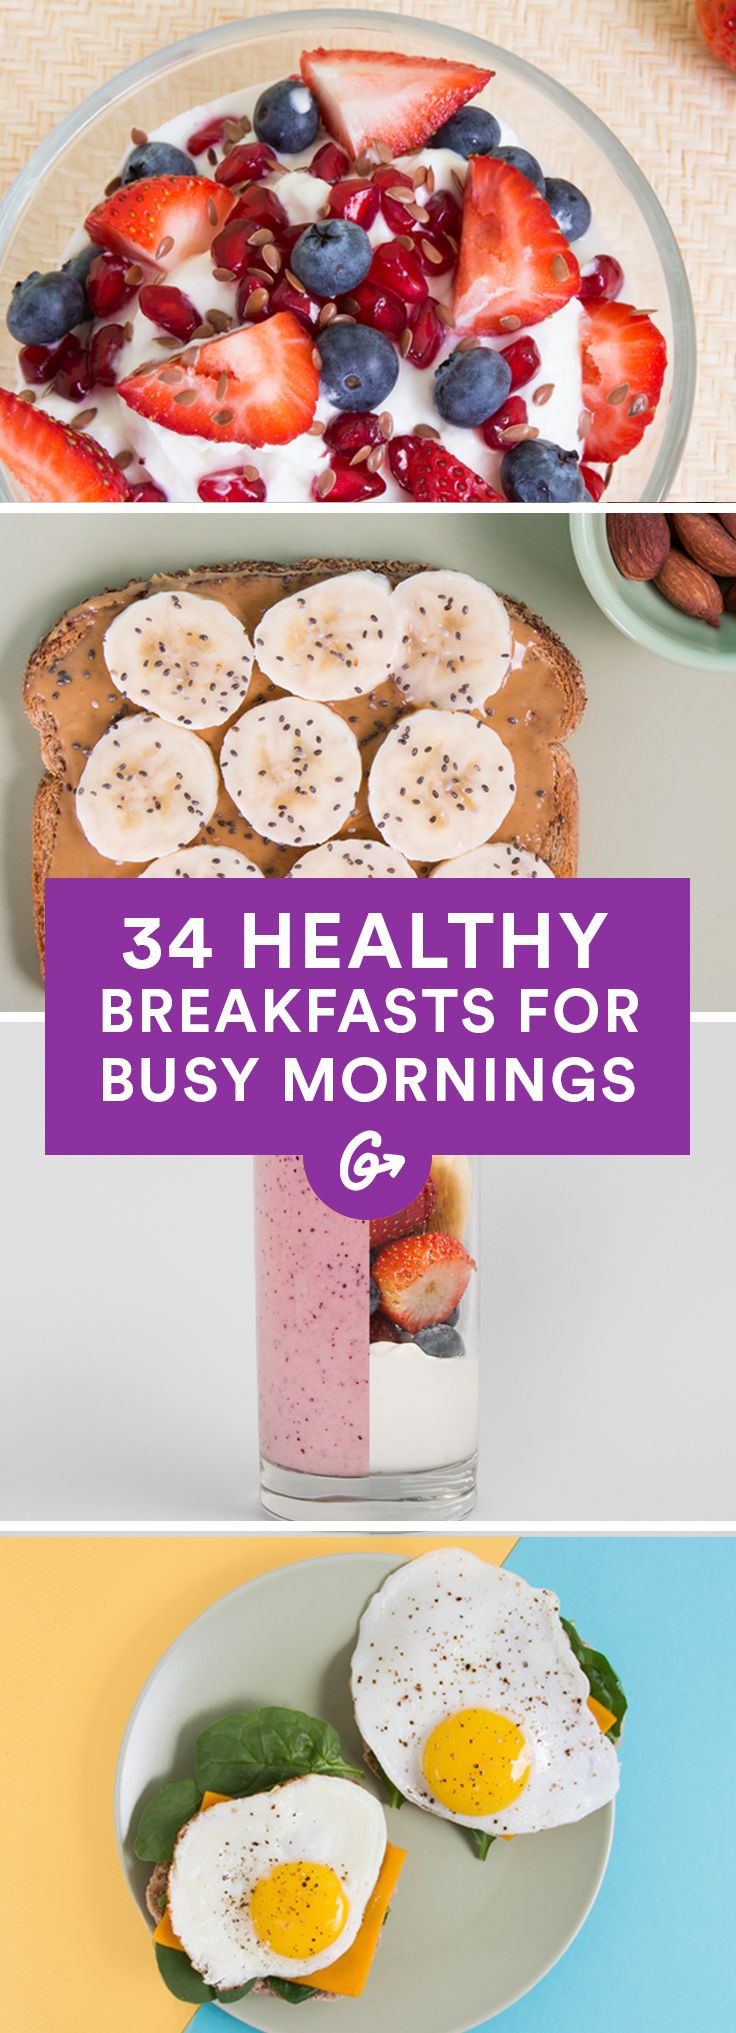 Pinterest Healthy Breakfast
 Best 25 Healthy breakfasts ideas on Pinterest